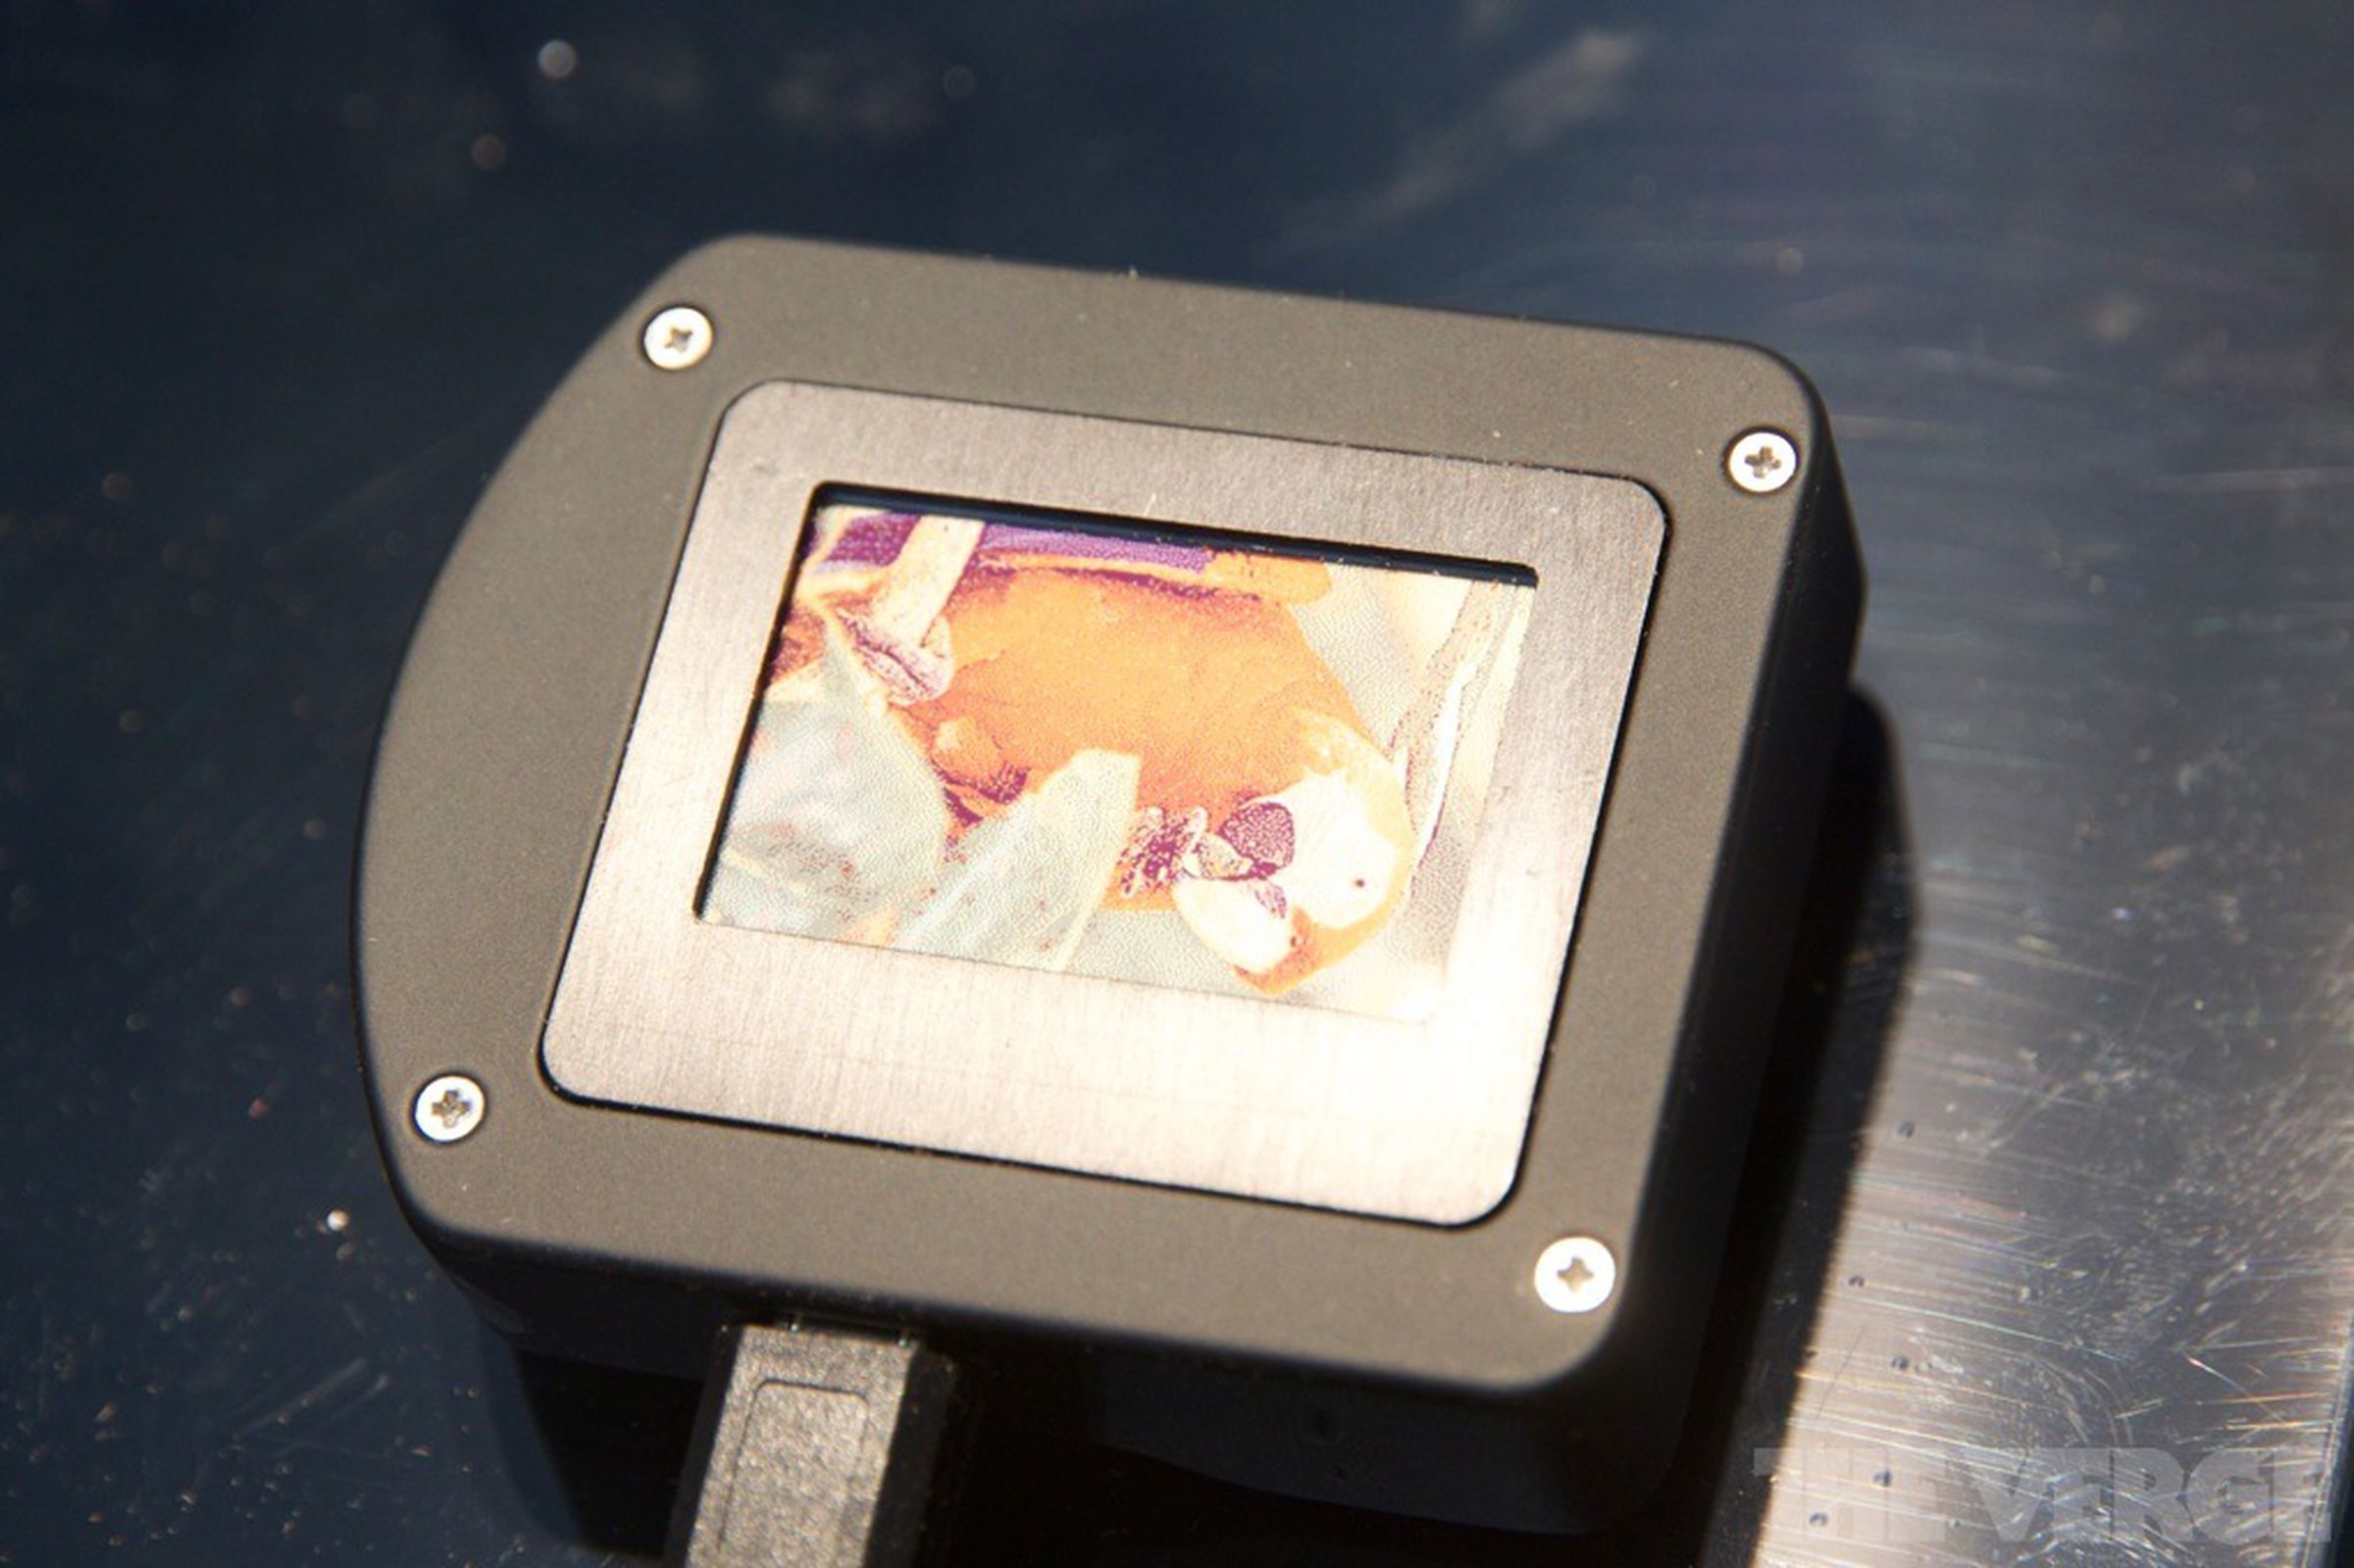 Qualcomm Mirasol reflective display prototype photos